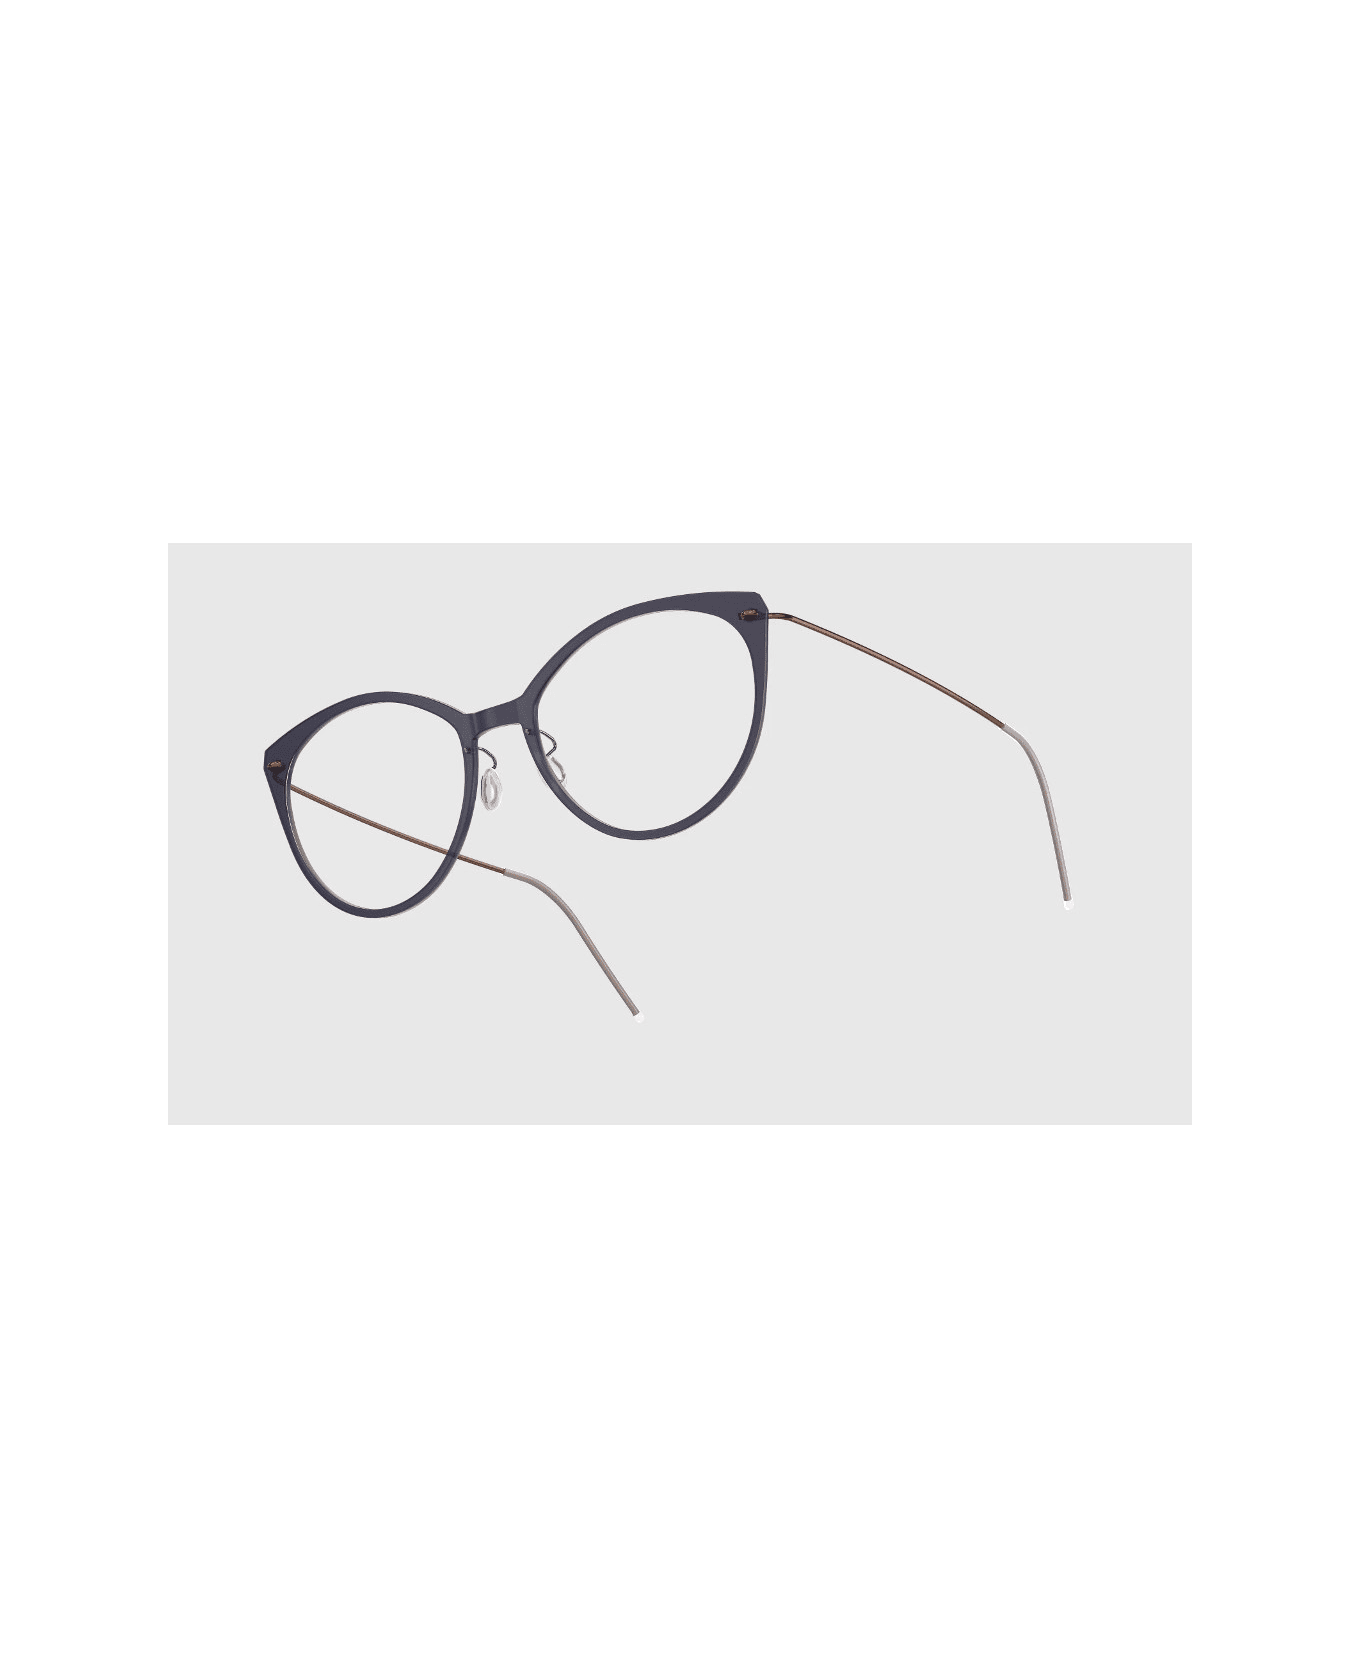 LINDBERG Now 6520 D16 Glasses アイウェア